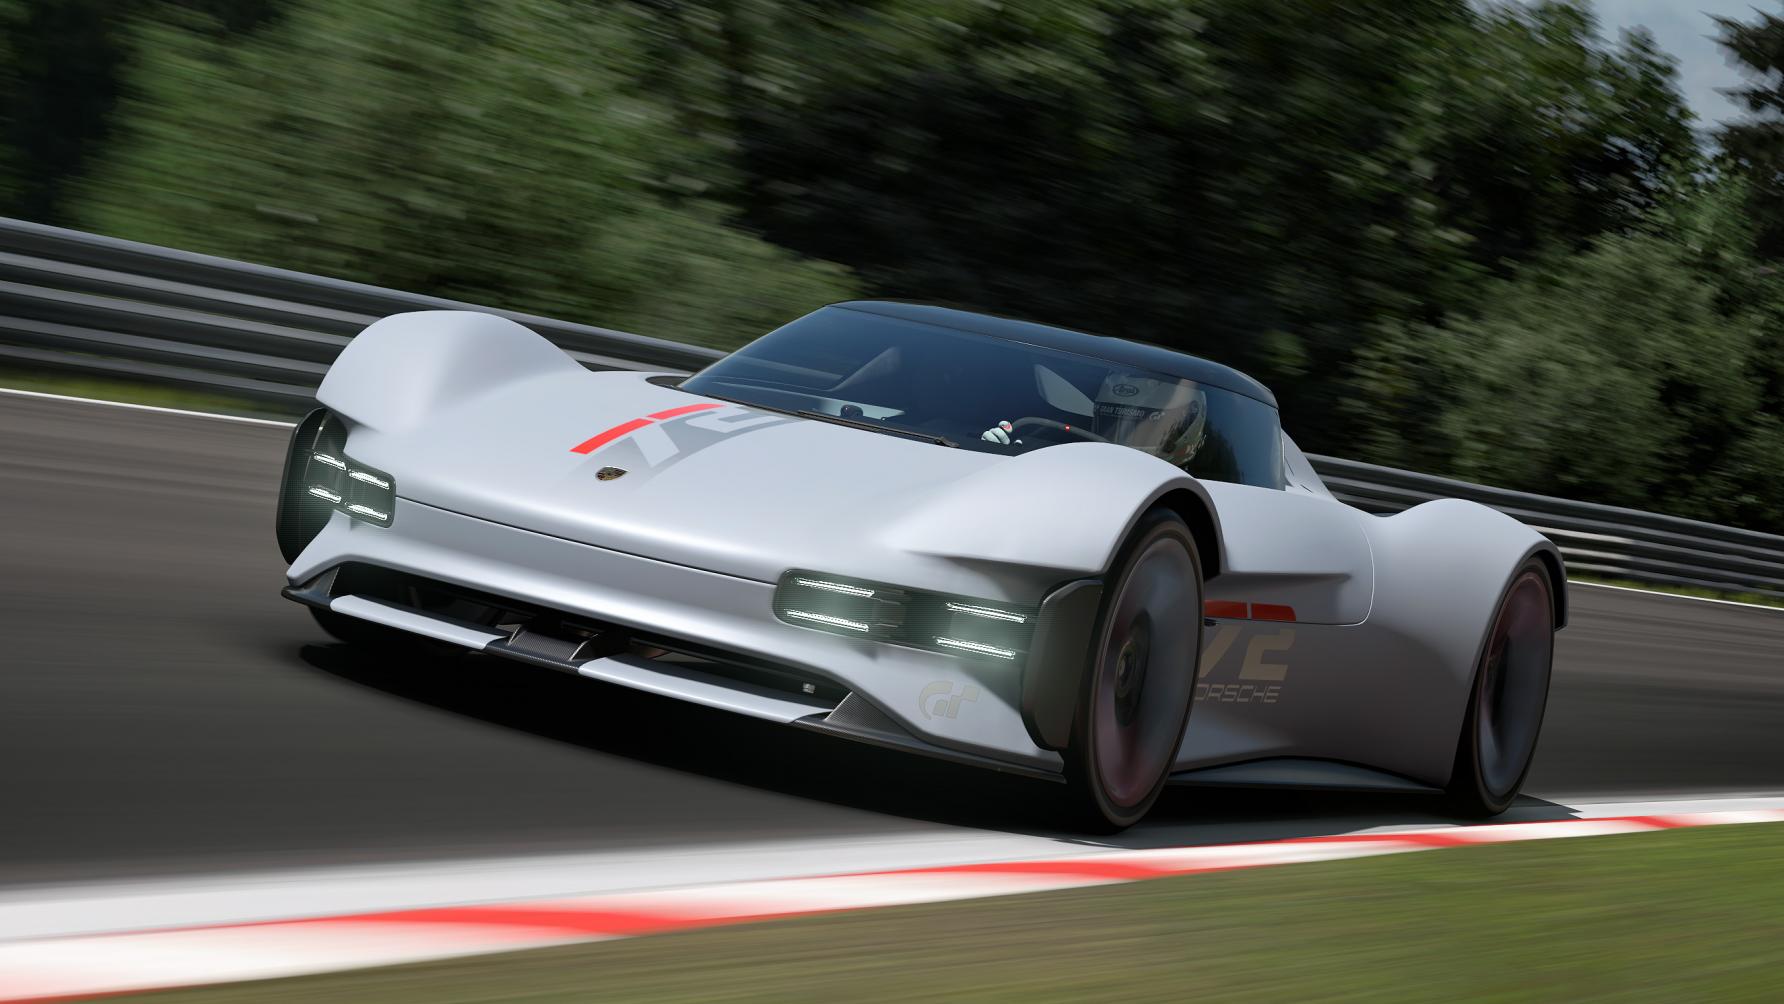 Porsche Vision Gran Turismo concept